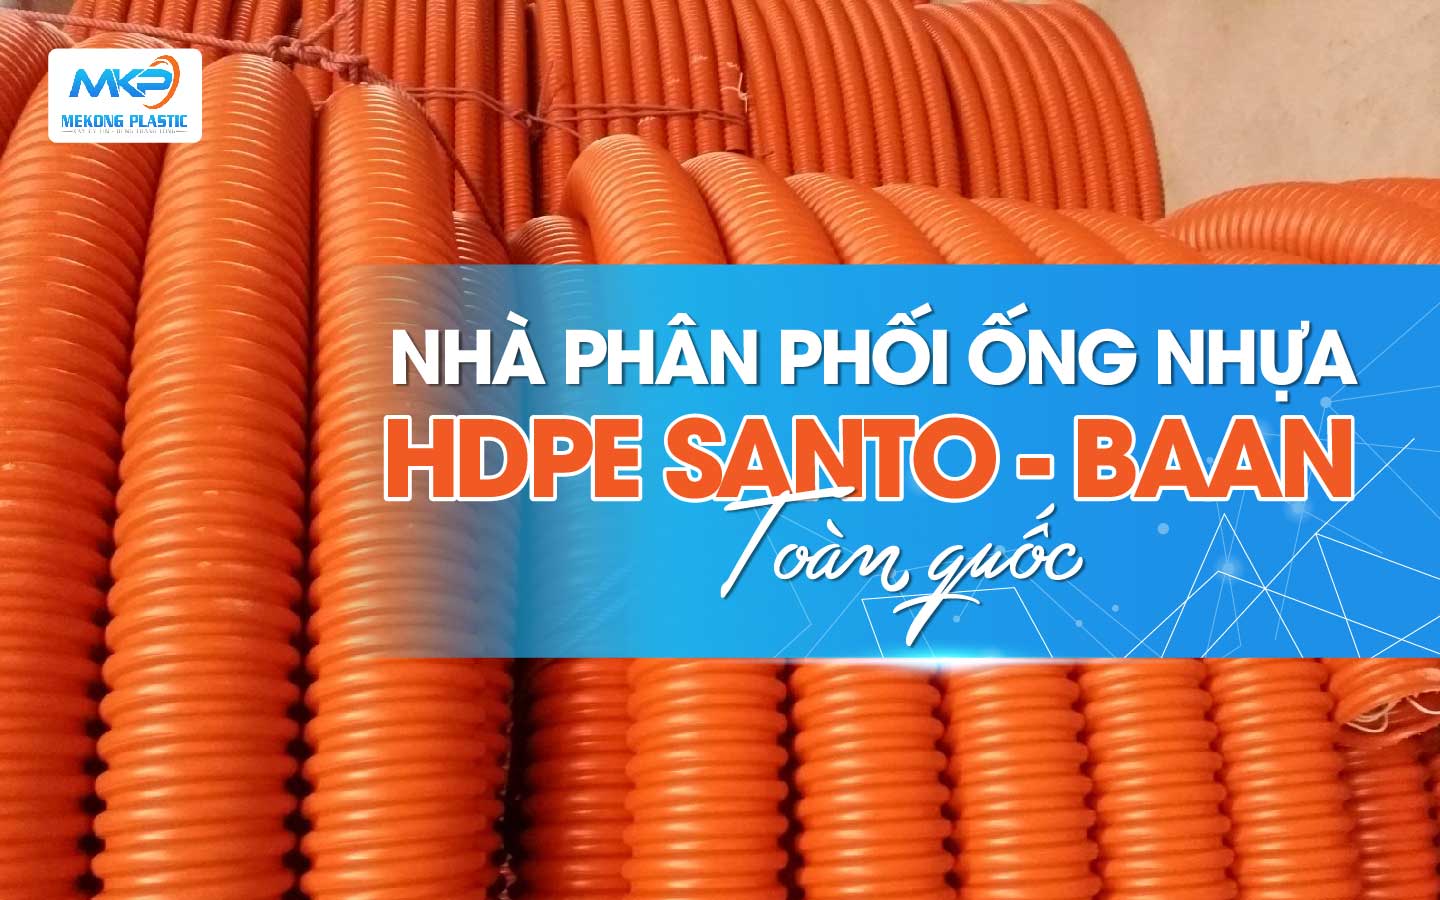 Nhà Phân Phối Ống Nhựa HDPE Santo -Baan Toàn Quốc